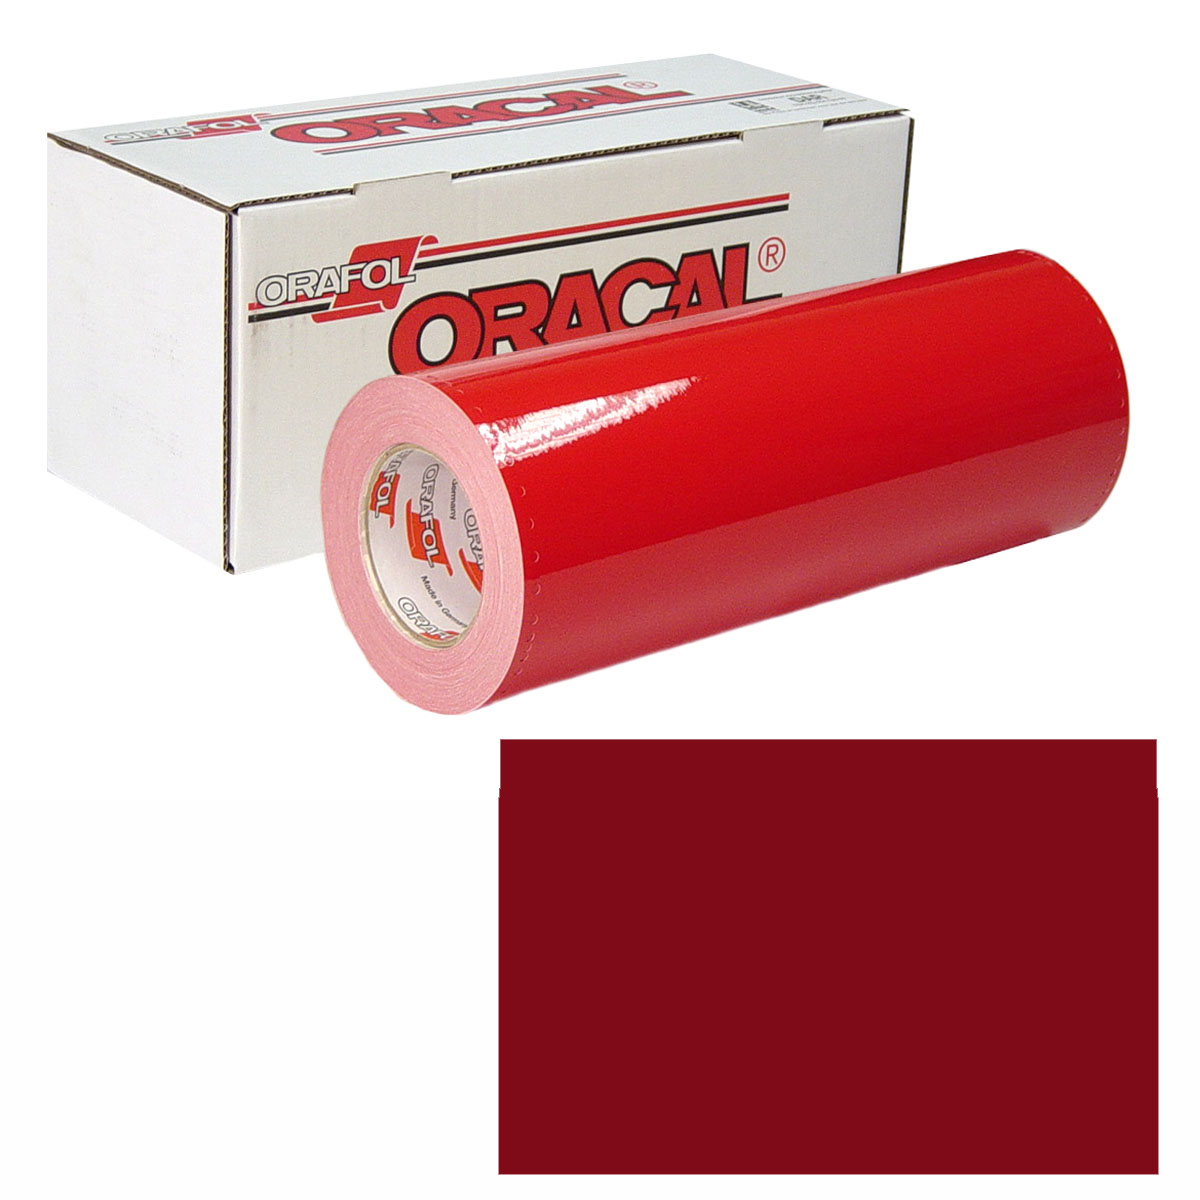 ORACAL 951M Unp 24in X 10yd 367 Red Metallic